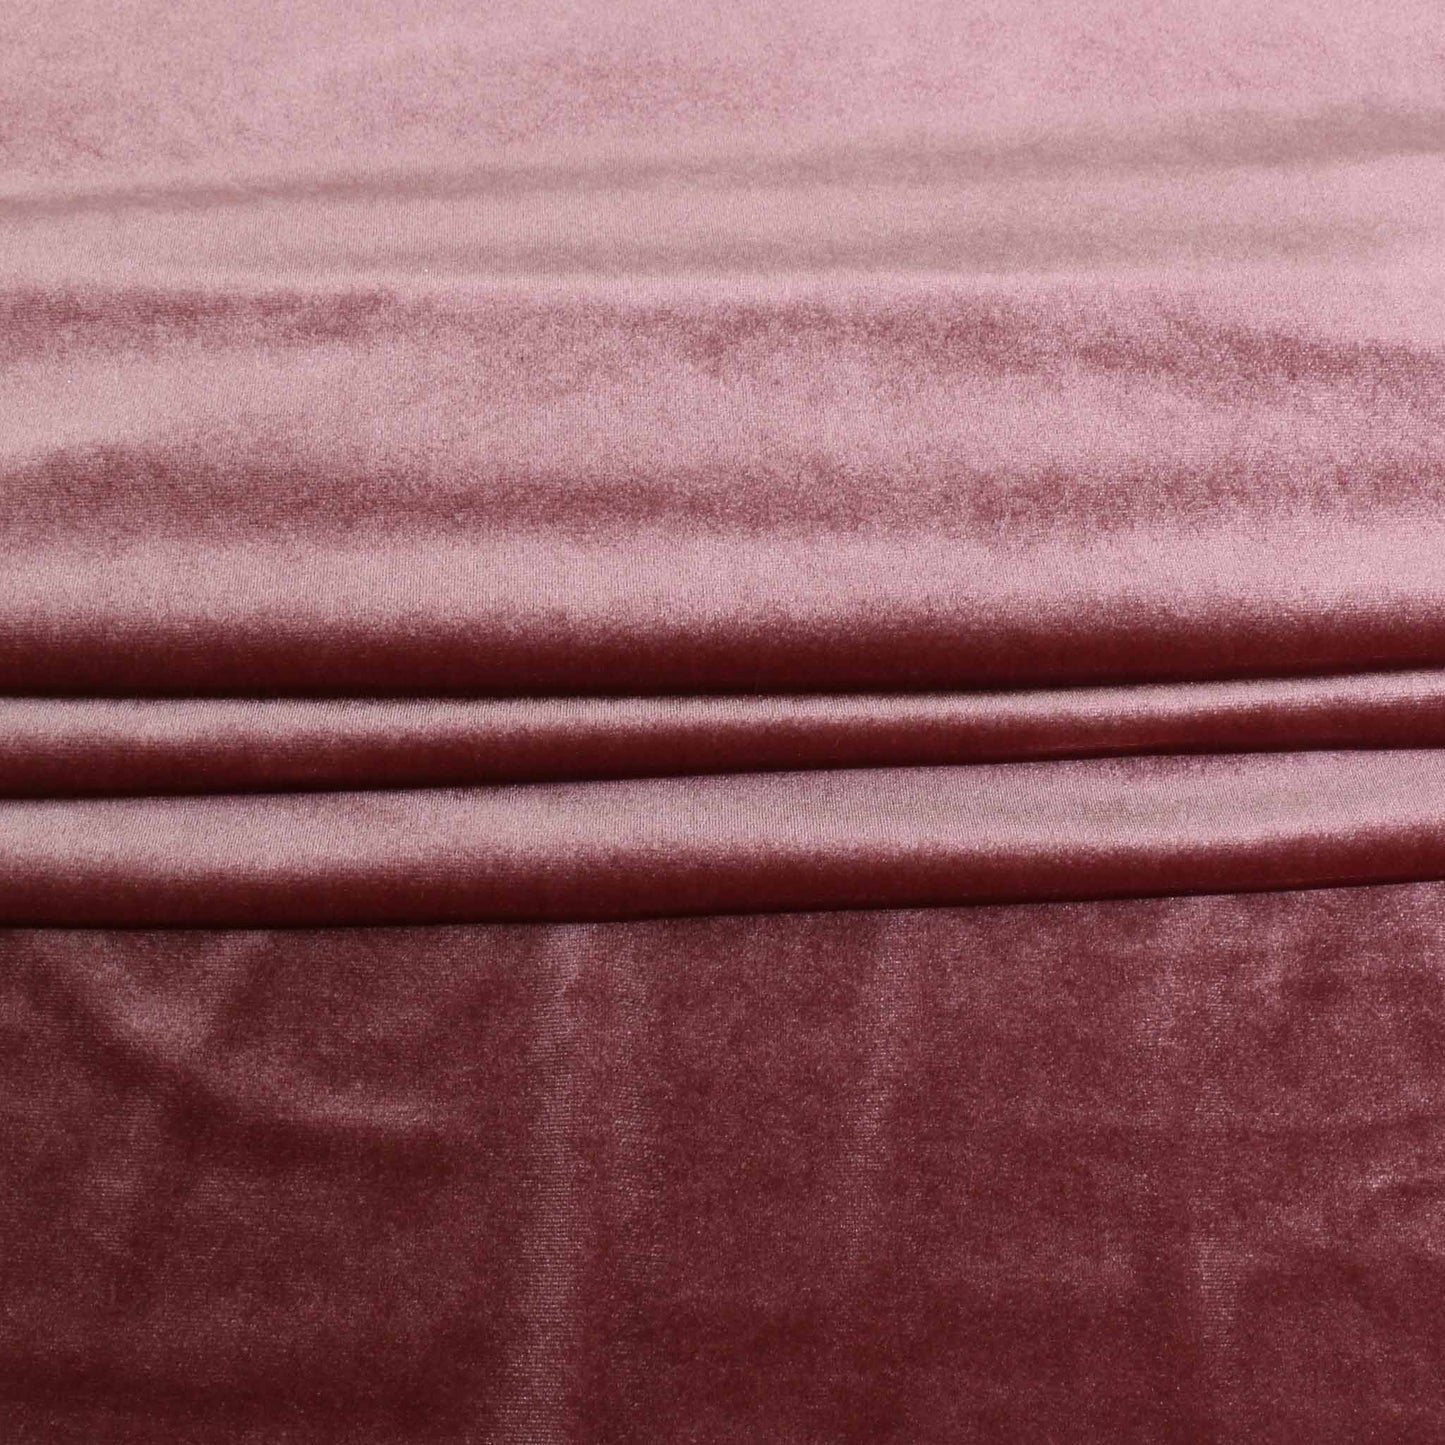 Velour - Terracotta, Dusky pink